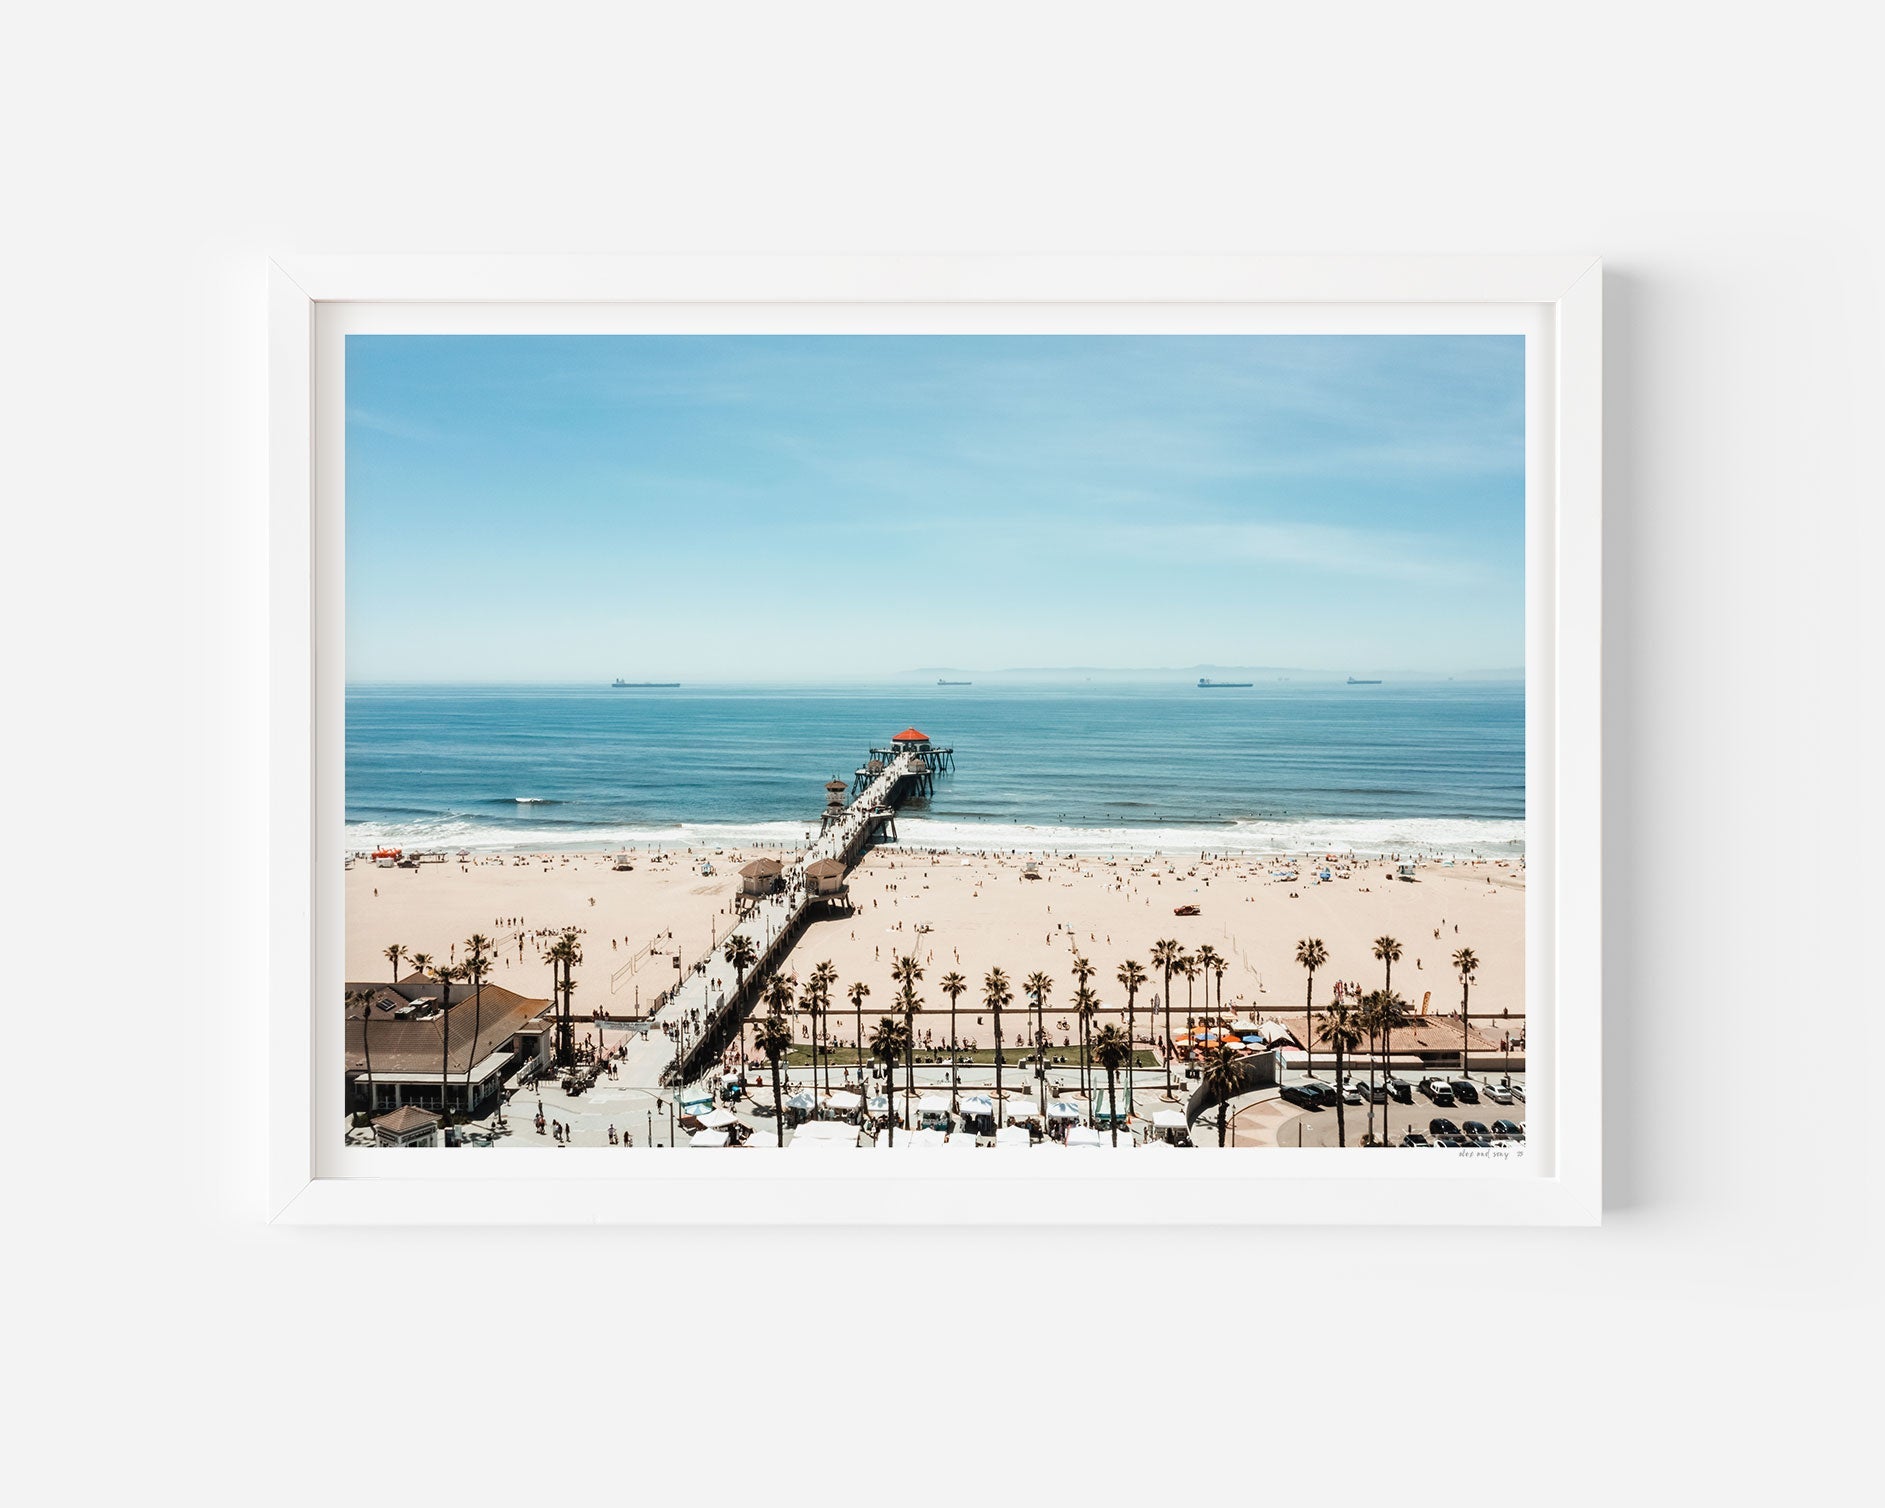 Huntington Beach • California - Alex and Sony